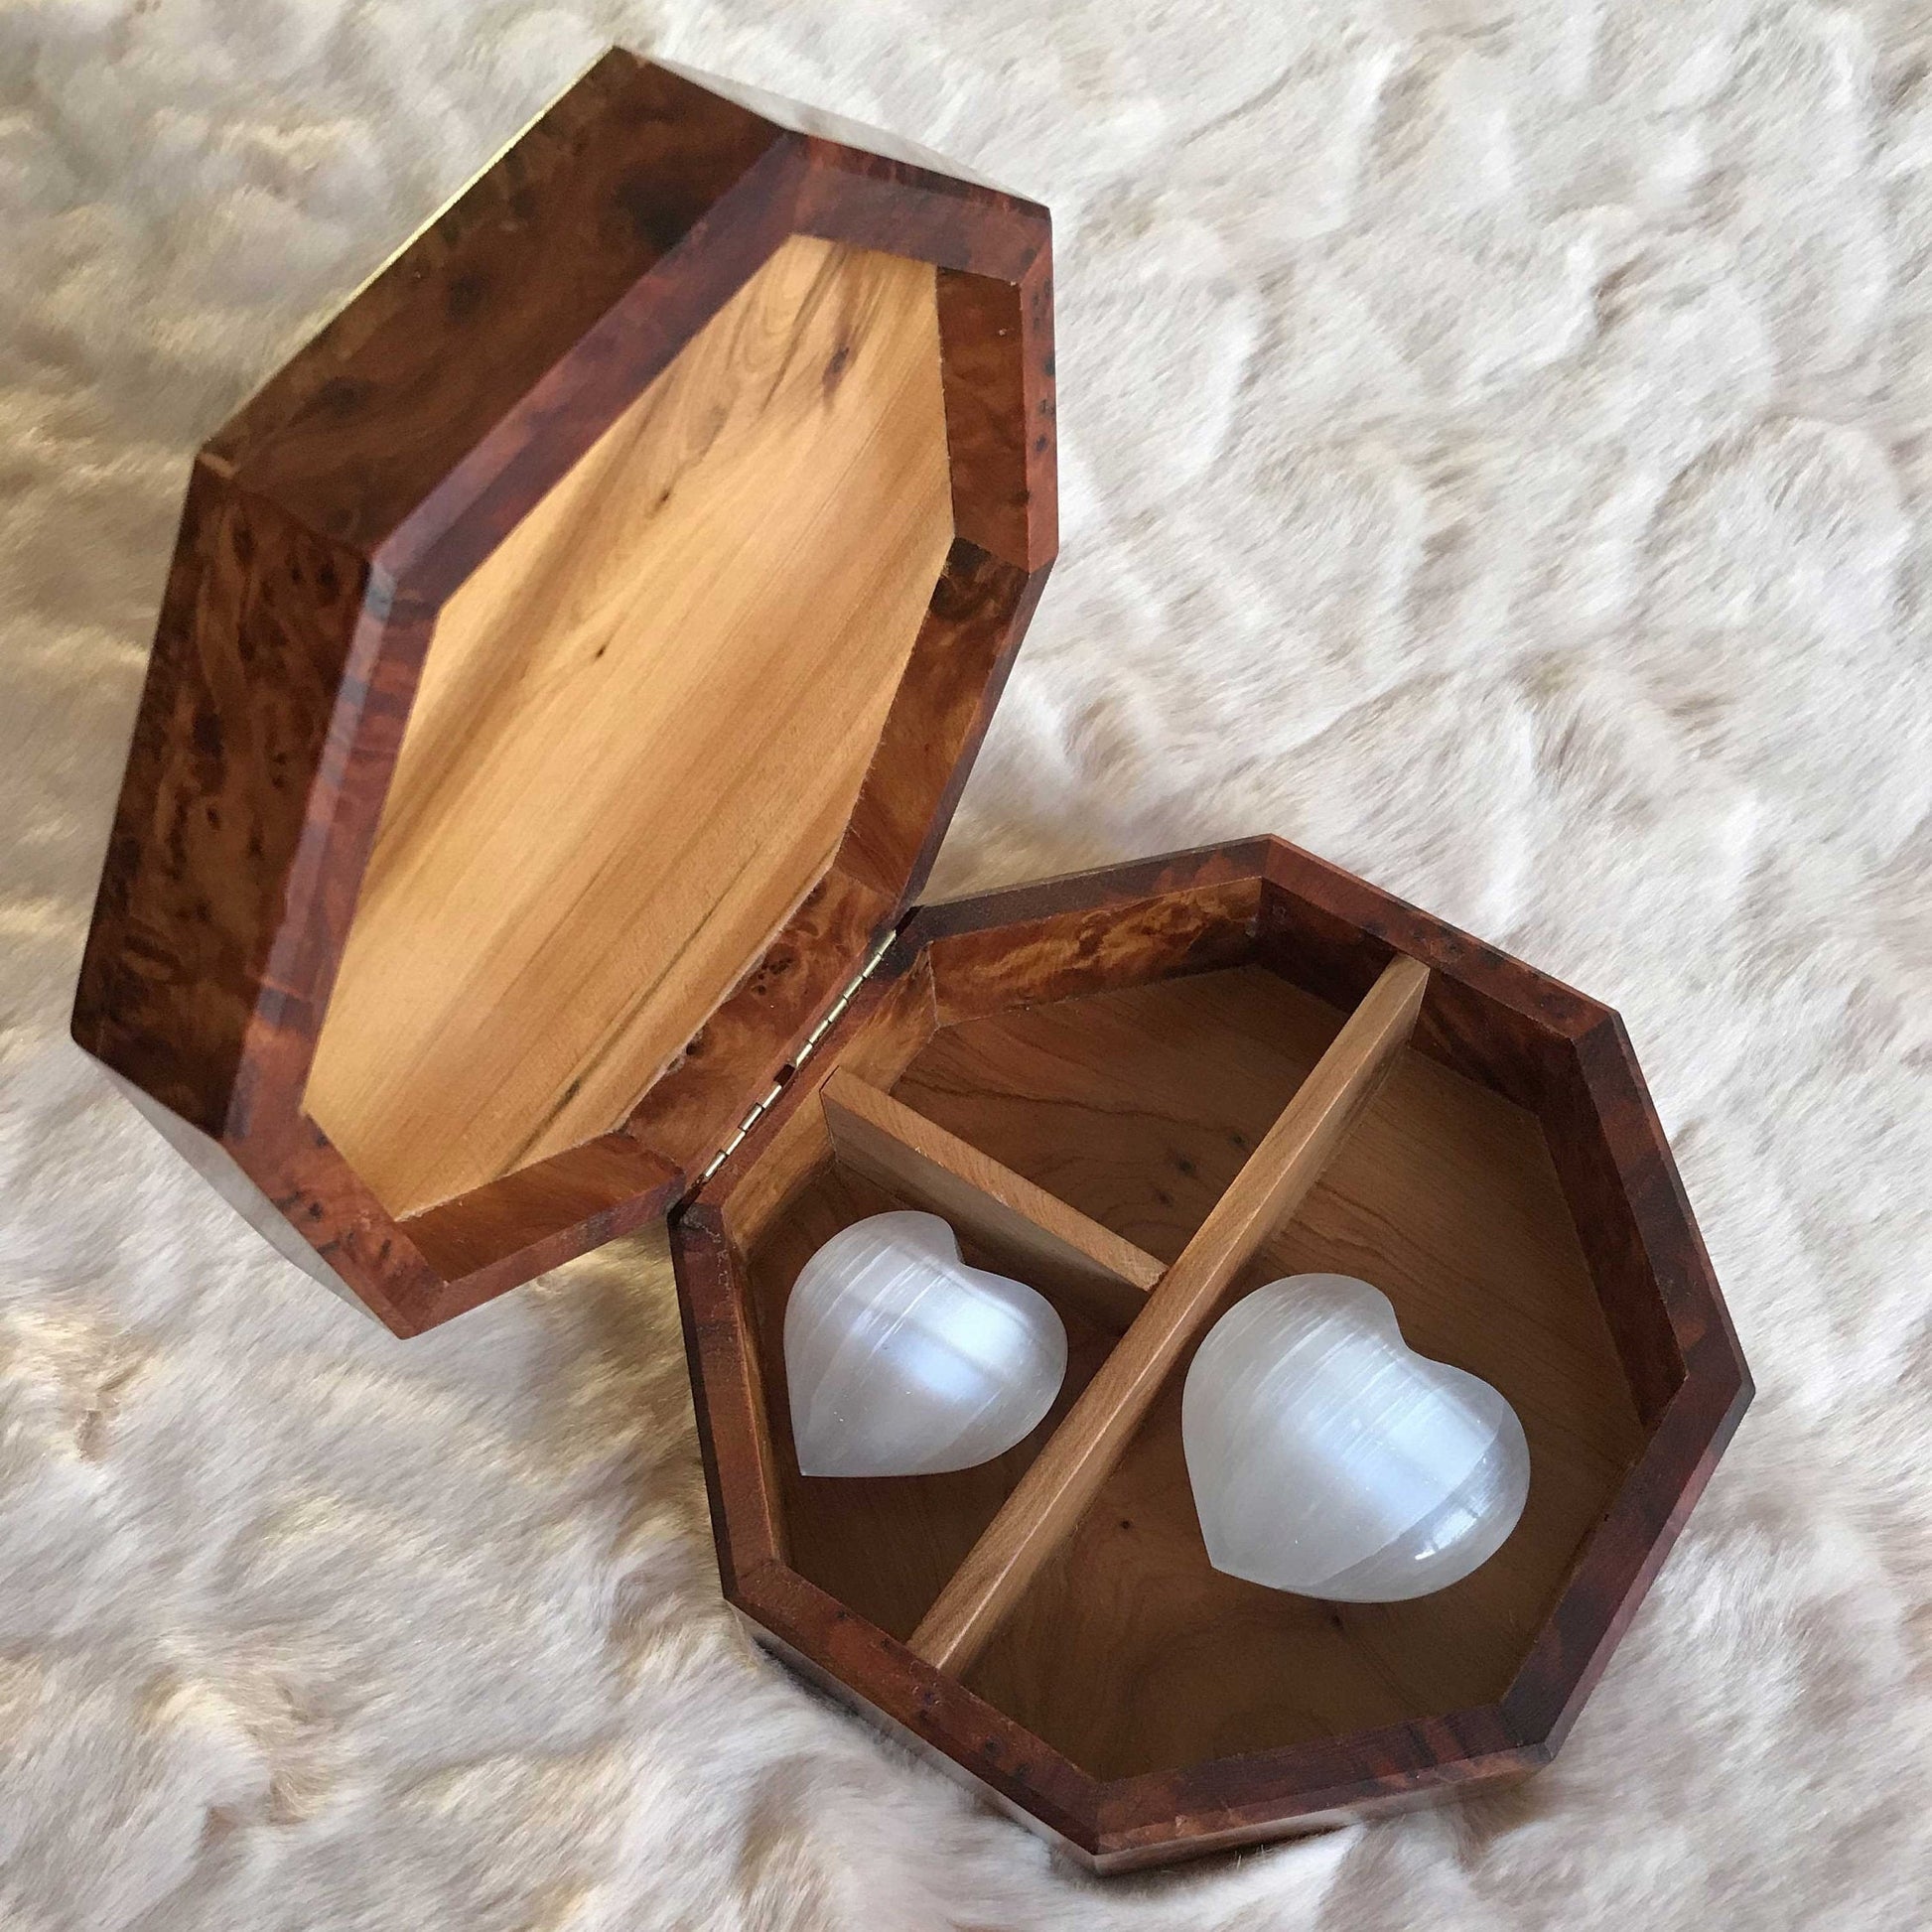 Moroccan Thuya wood jewelry Box,walnut jewellery wood box diamond pattern,gift idea,wooden jewelry box with key lock, engraved Jewelry Box